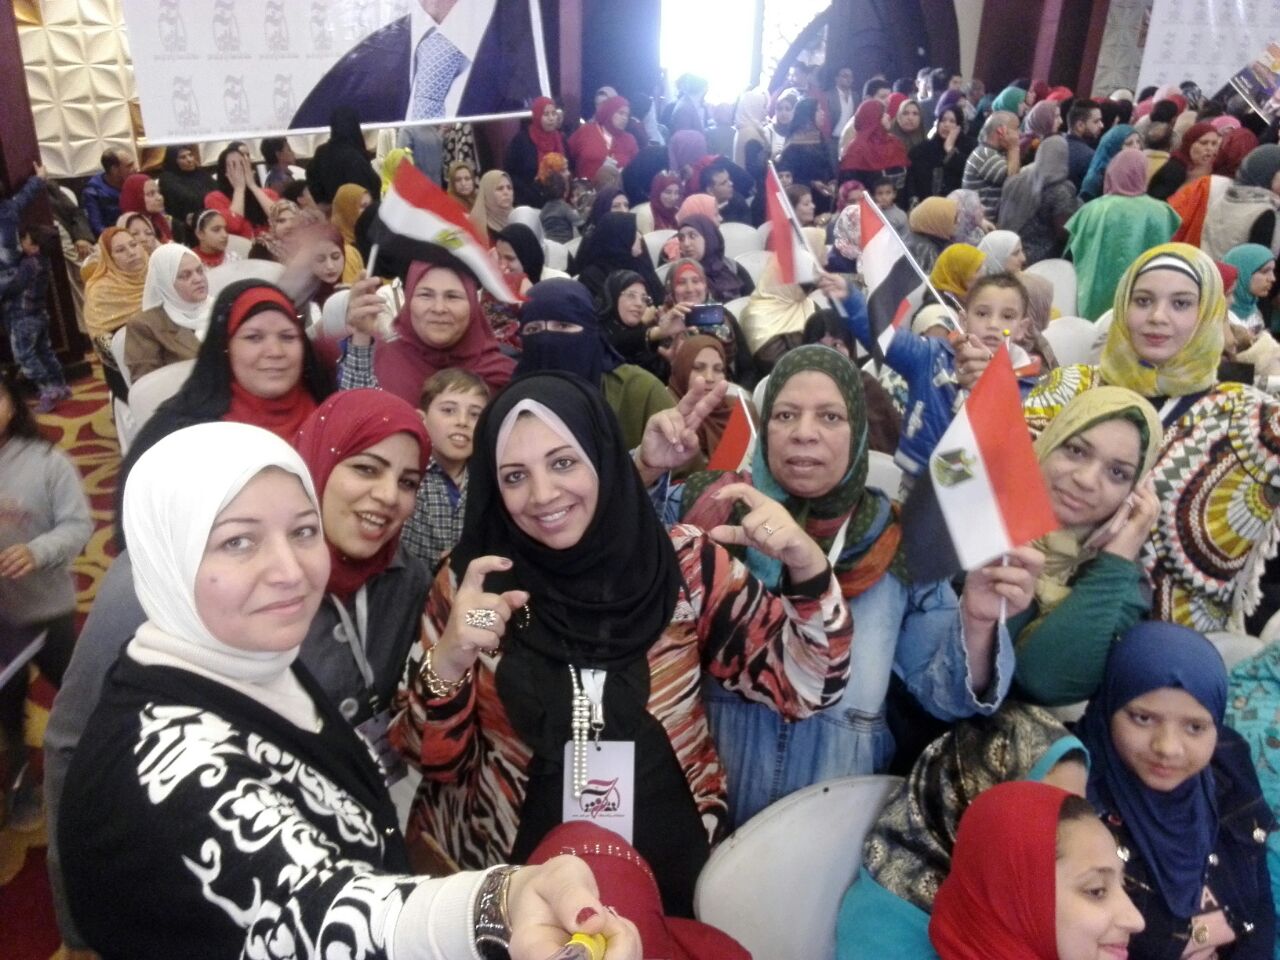 نساء الزقازيق يحتشدن بالمؤتمر الجماهيري لتأييد السيسي في الانتخابات (3)